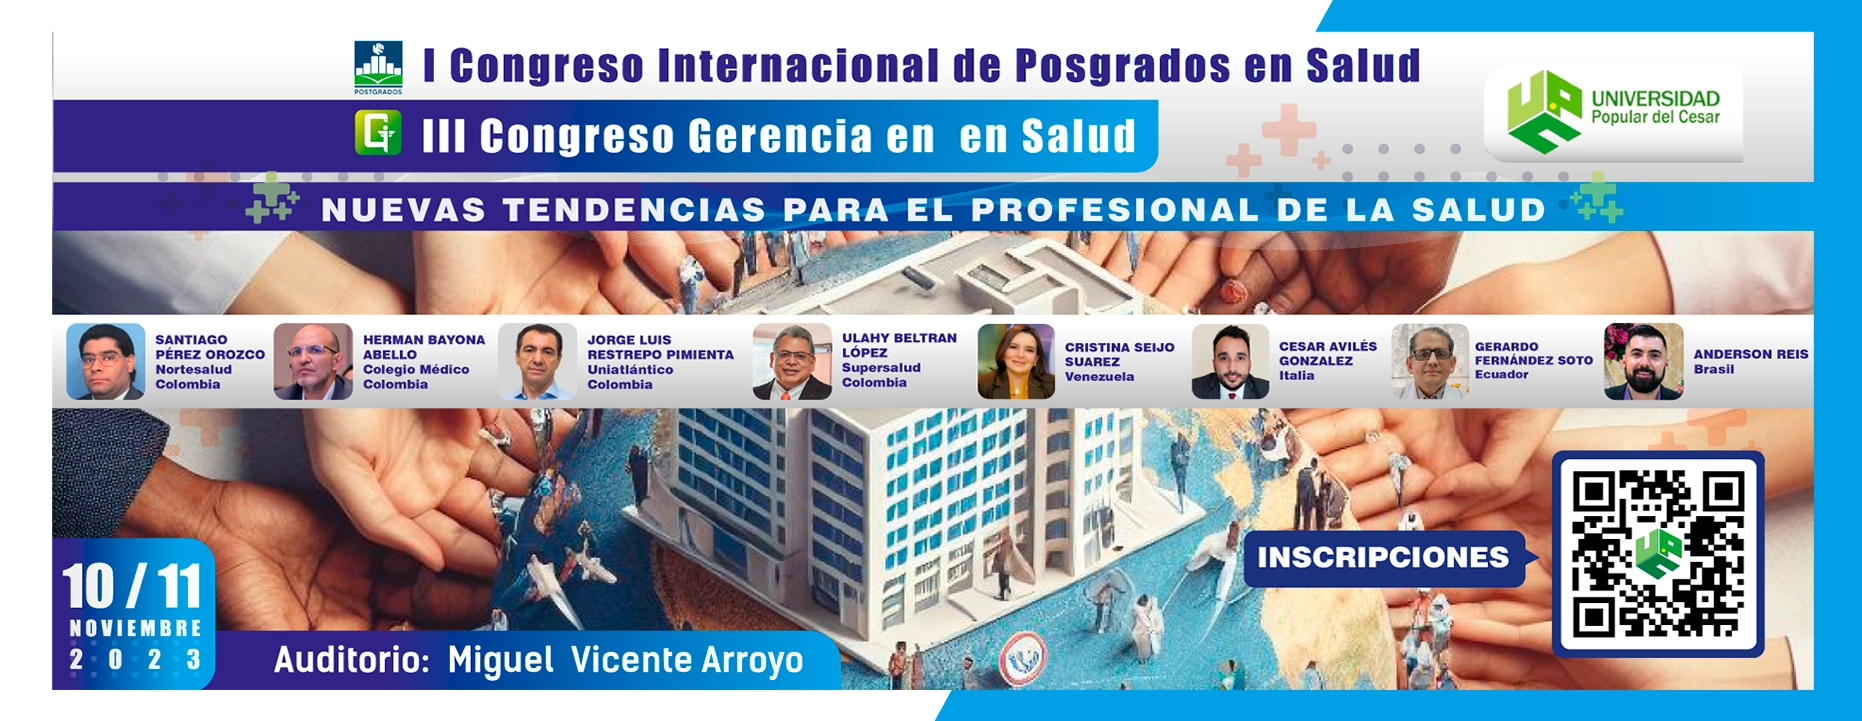 Banner I Congreso Internacional de Posgrados en Salud